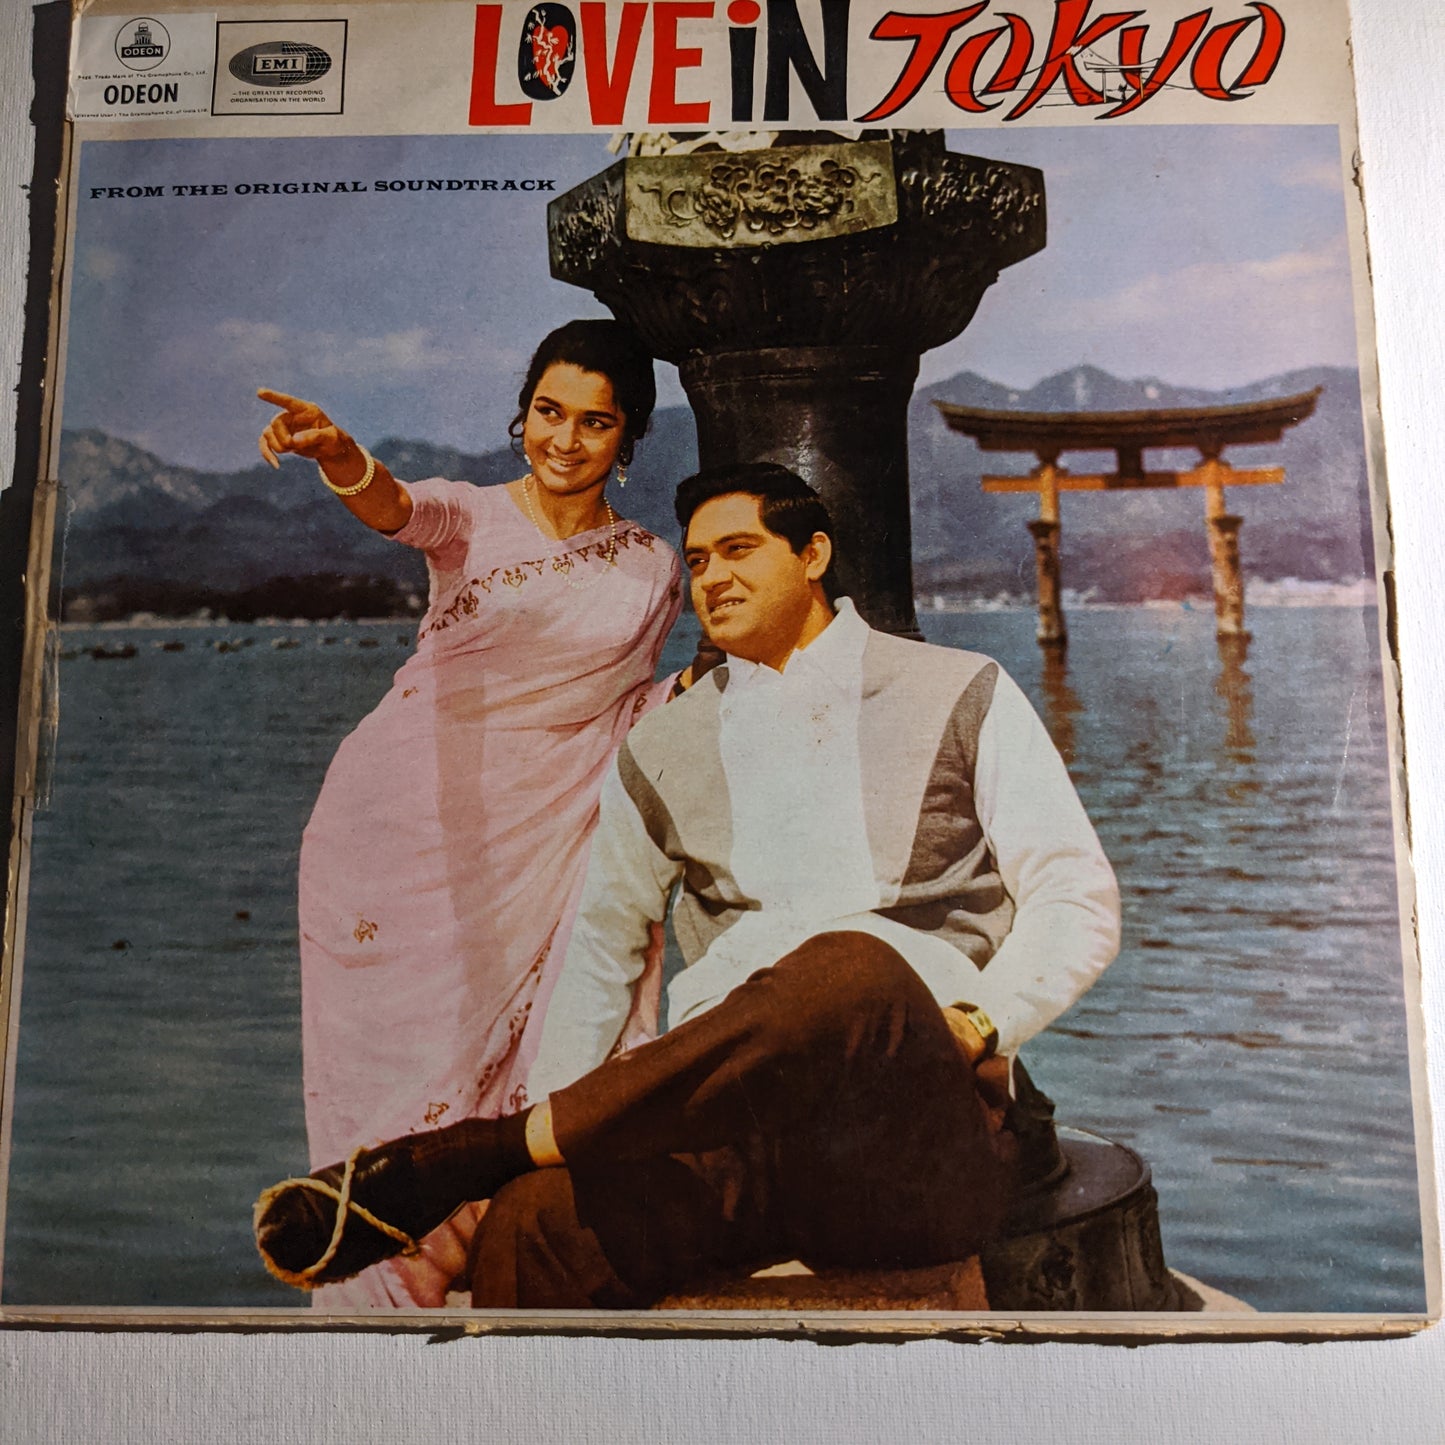 Love in Tokyo - Music by Shankar jaikishan 1st Odeon in VG+ condition